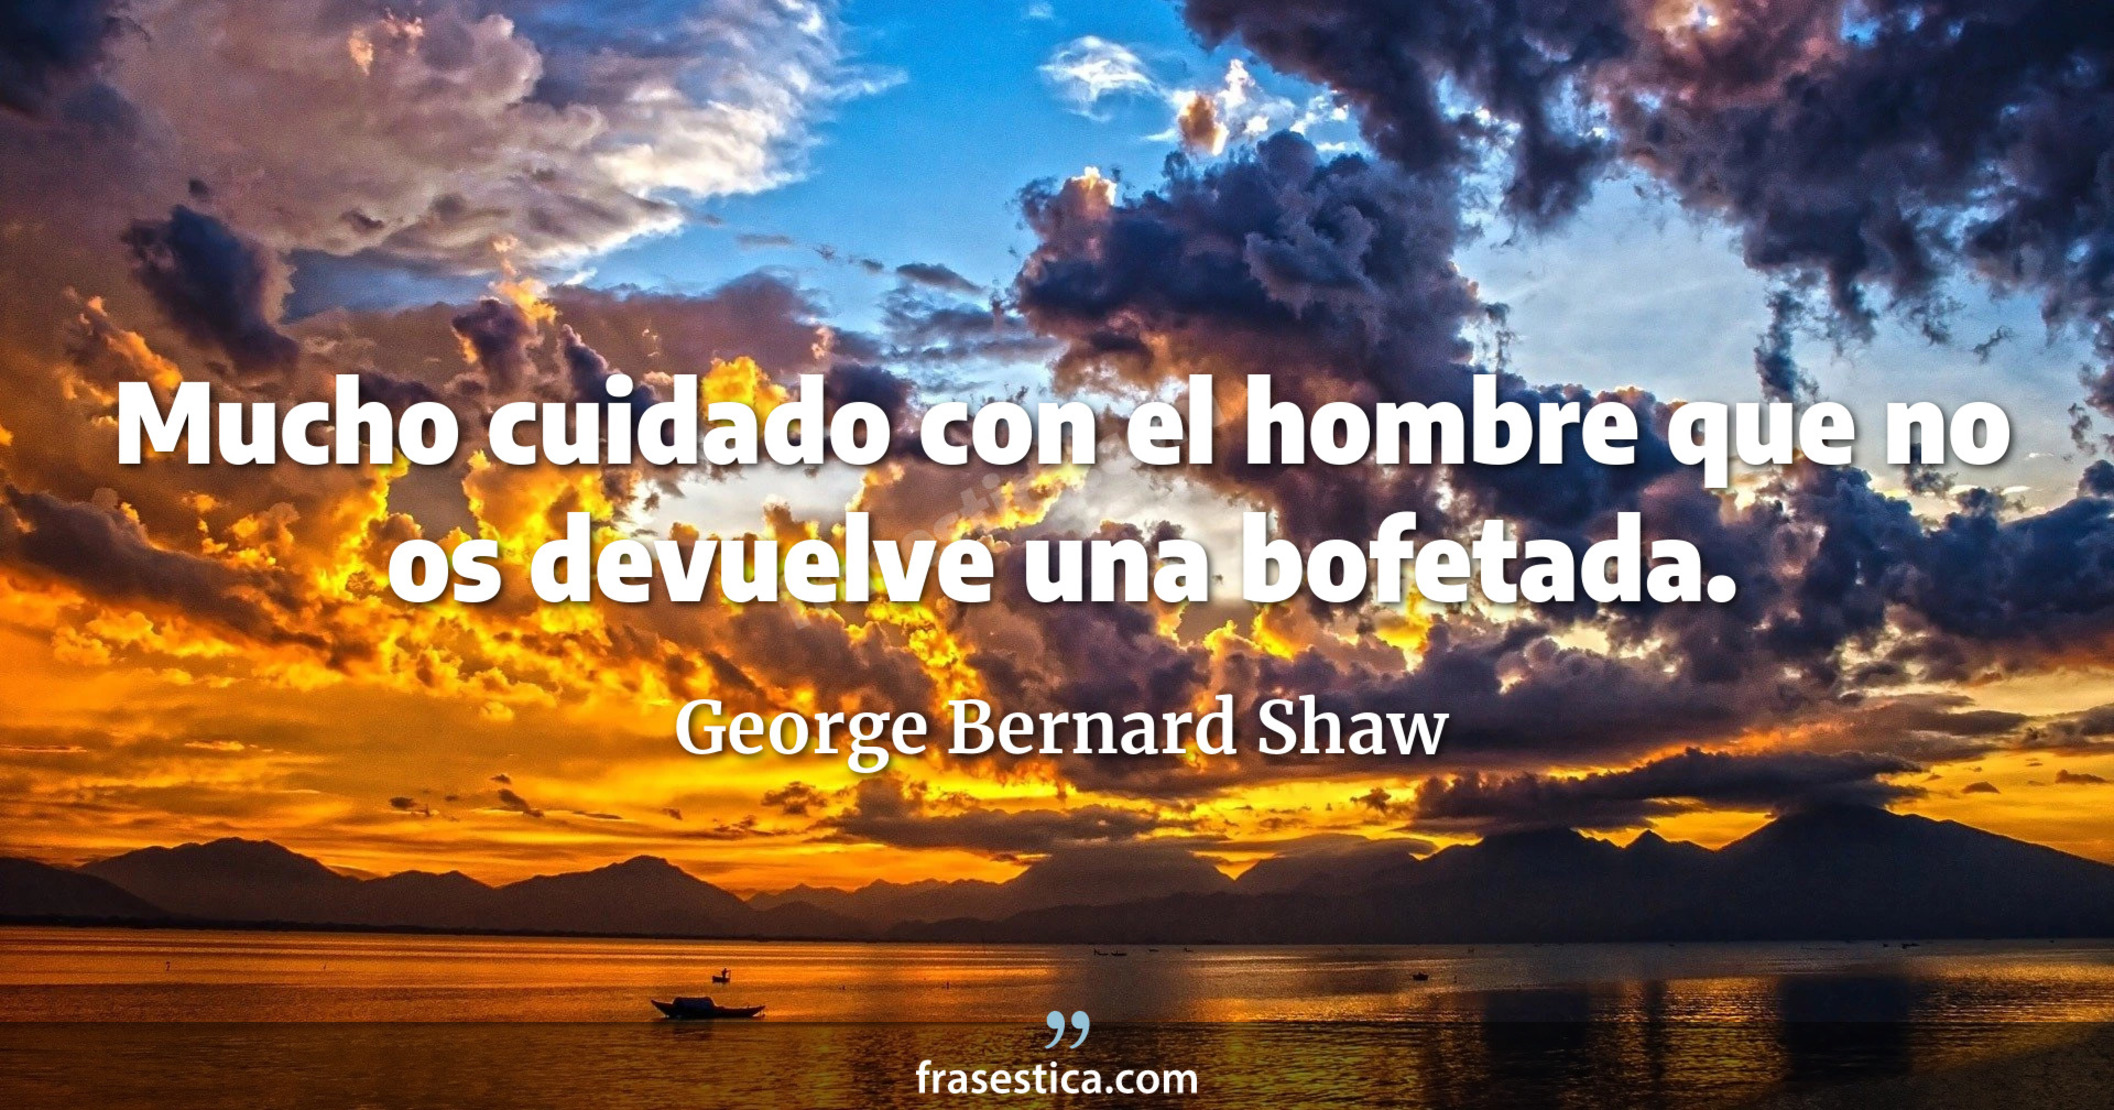 Mucho cuidado con el hombre que no os devuelve una bofetada. - George Bernard Shaw